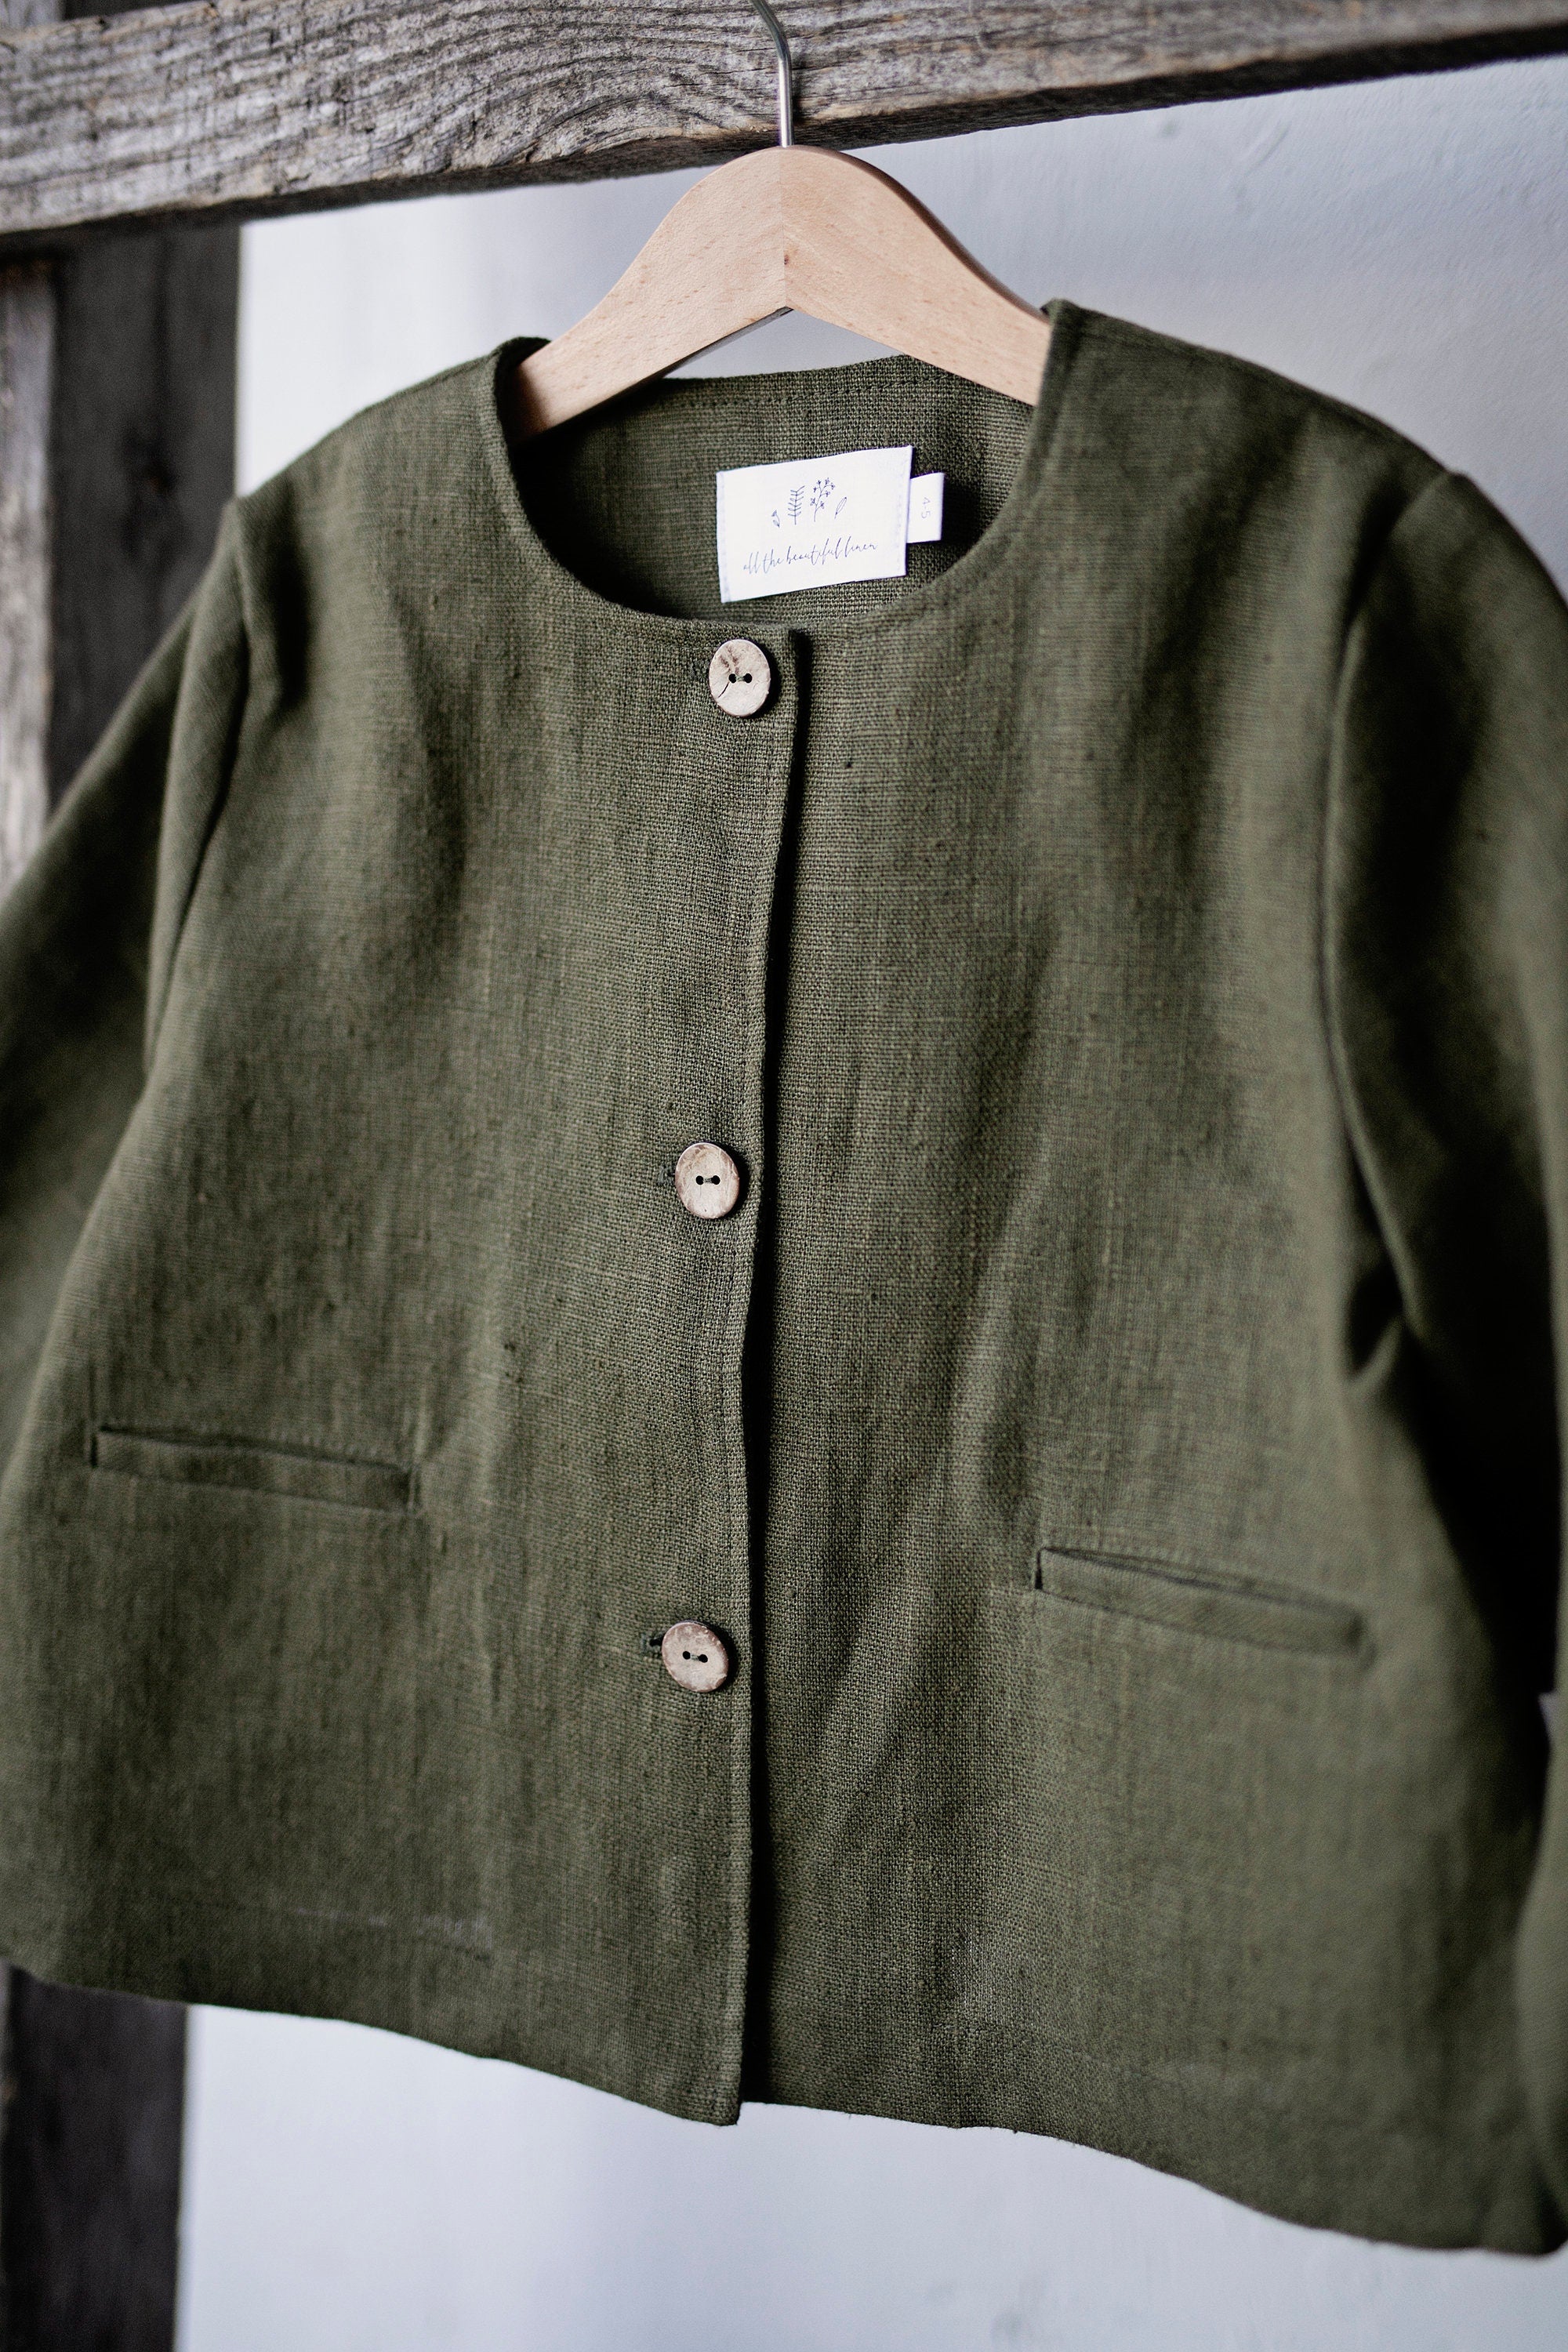 Moss Green Linen Jacket